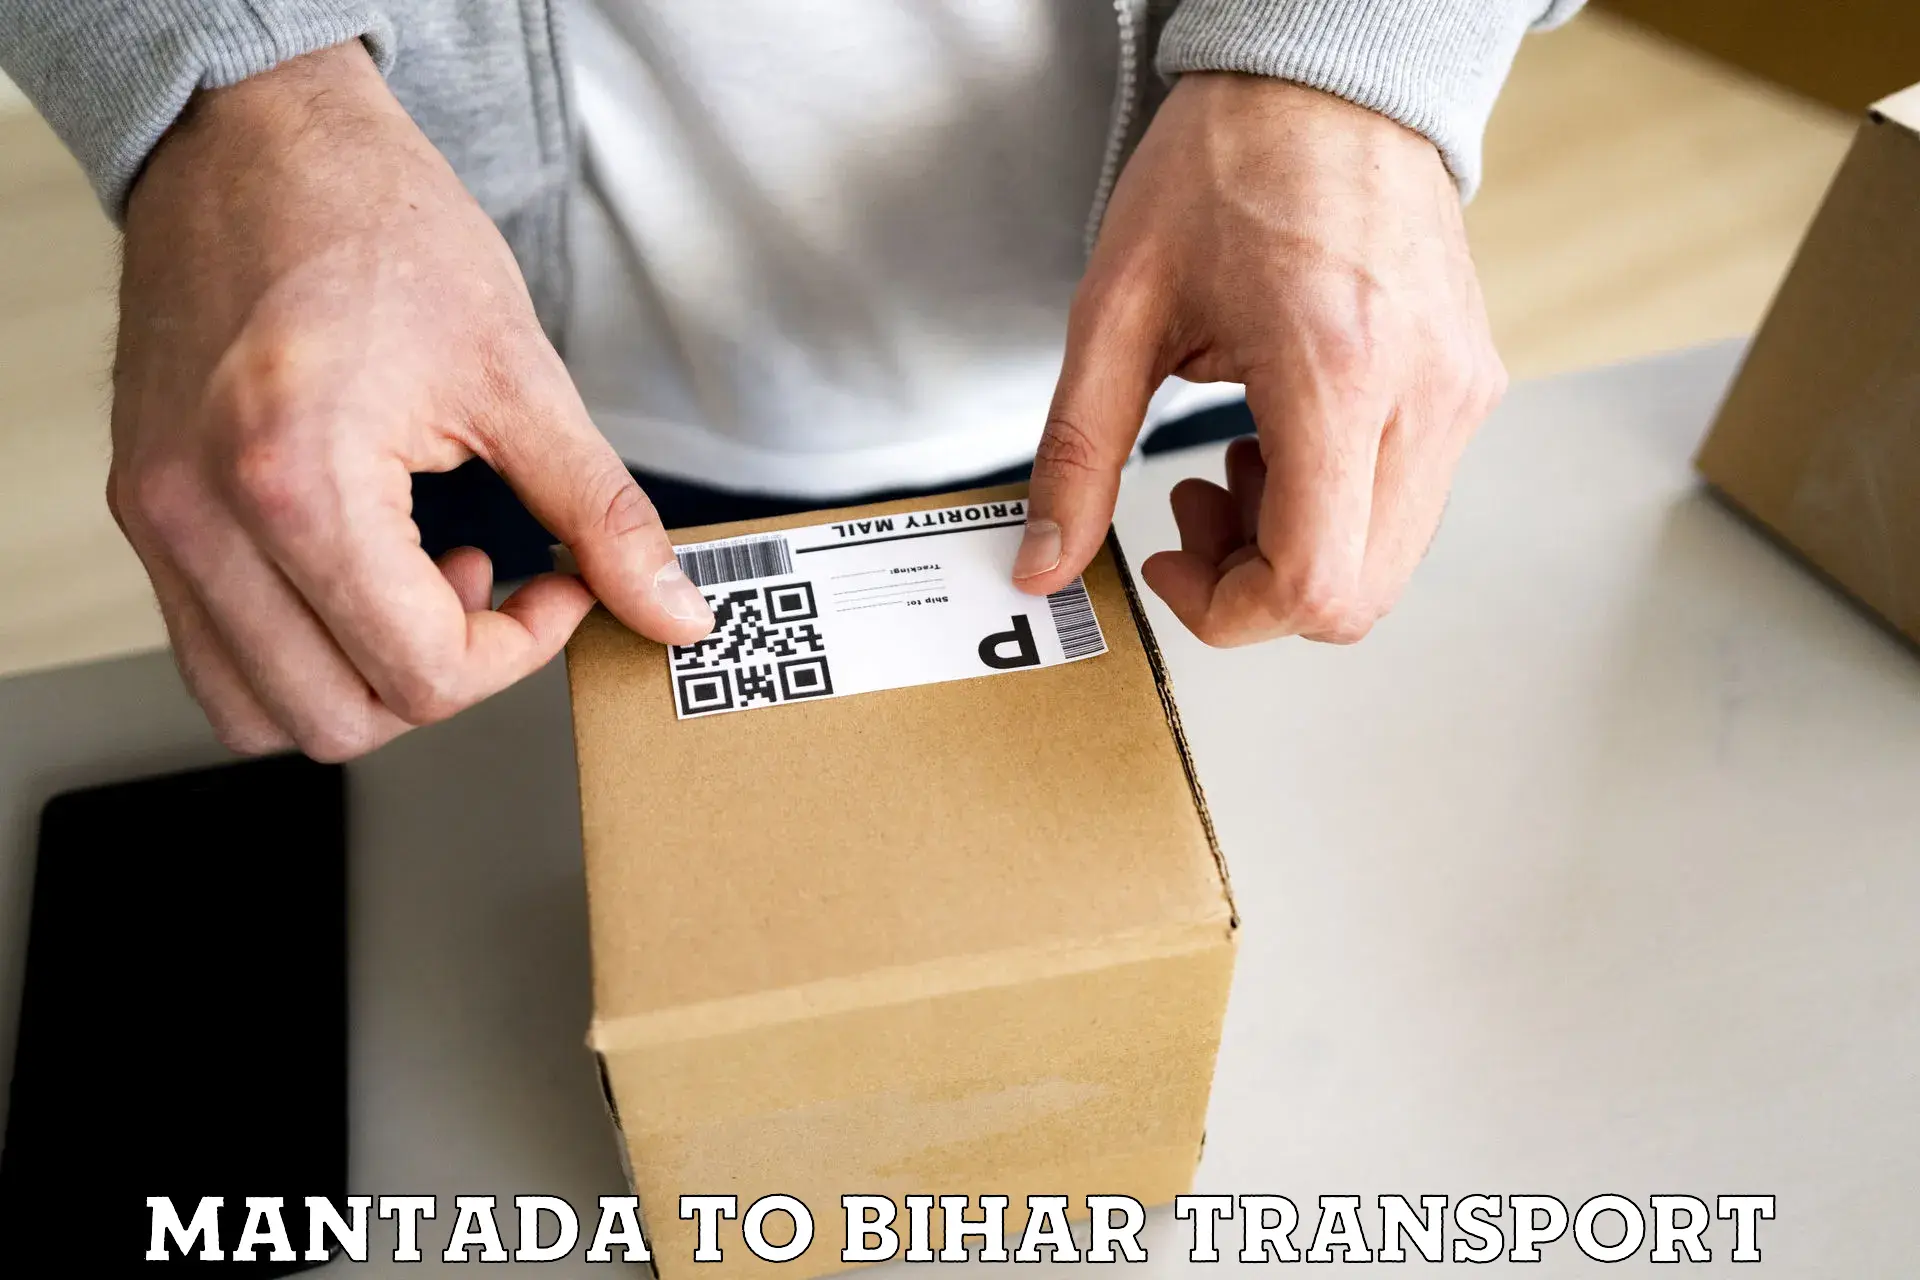 Transport in sharing Mantada to Bihar